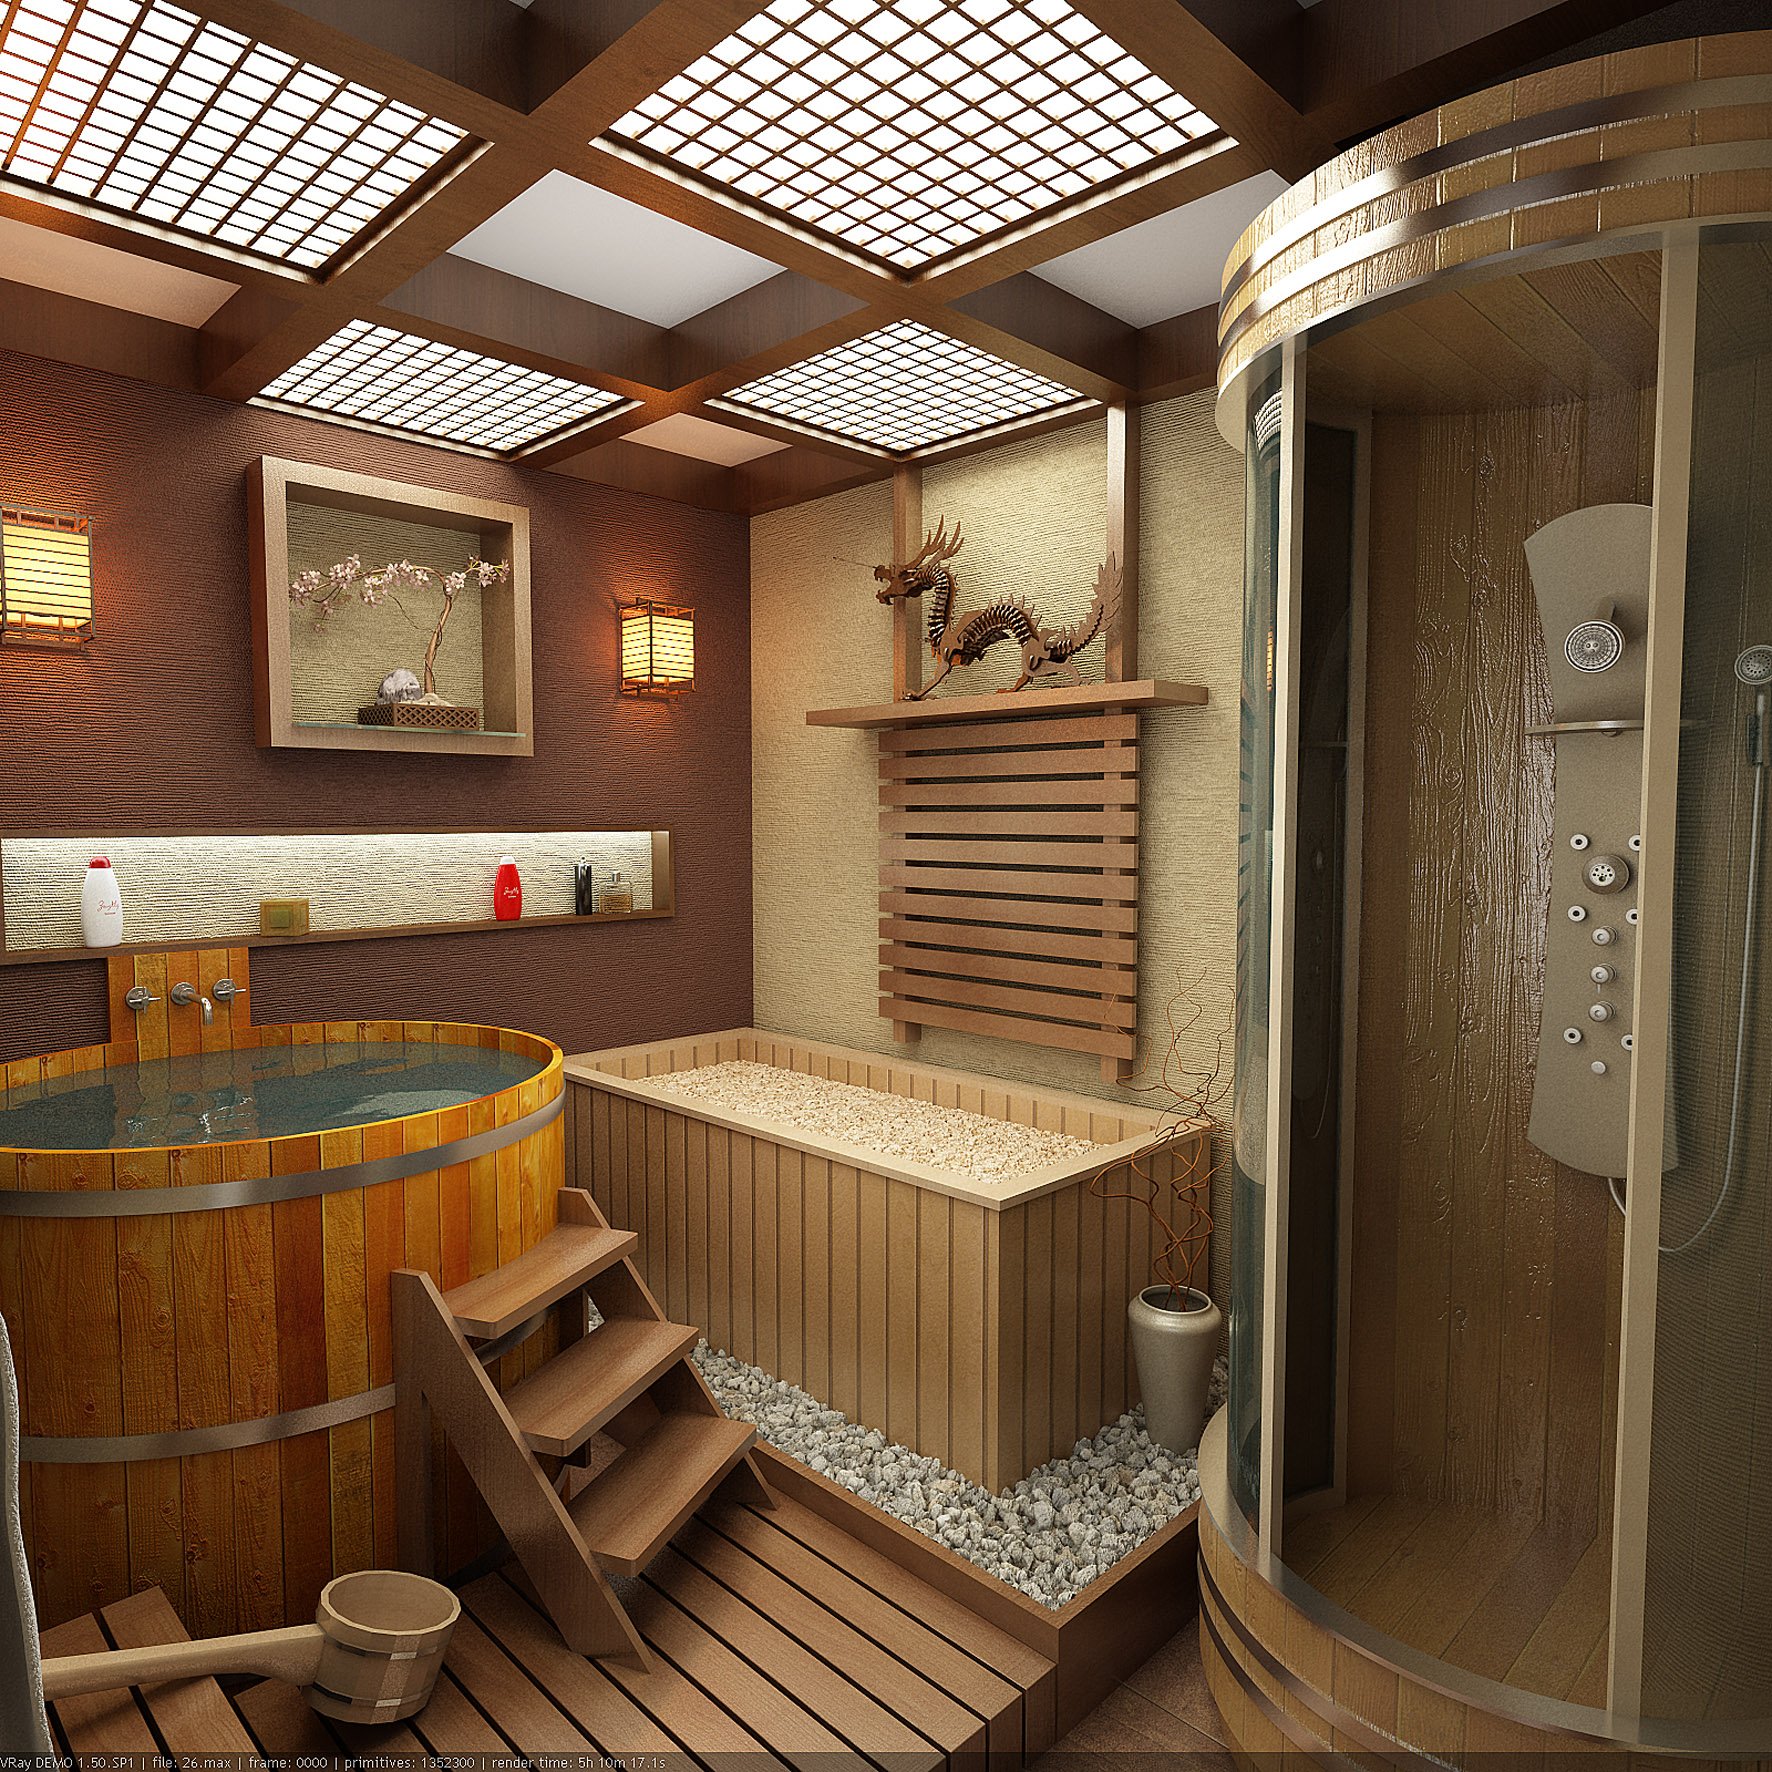 Внутренний интерьер бани – обители чистоты и здоровья